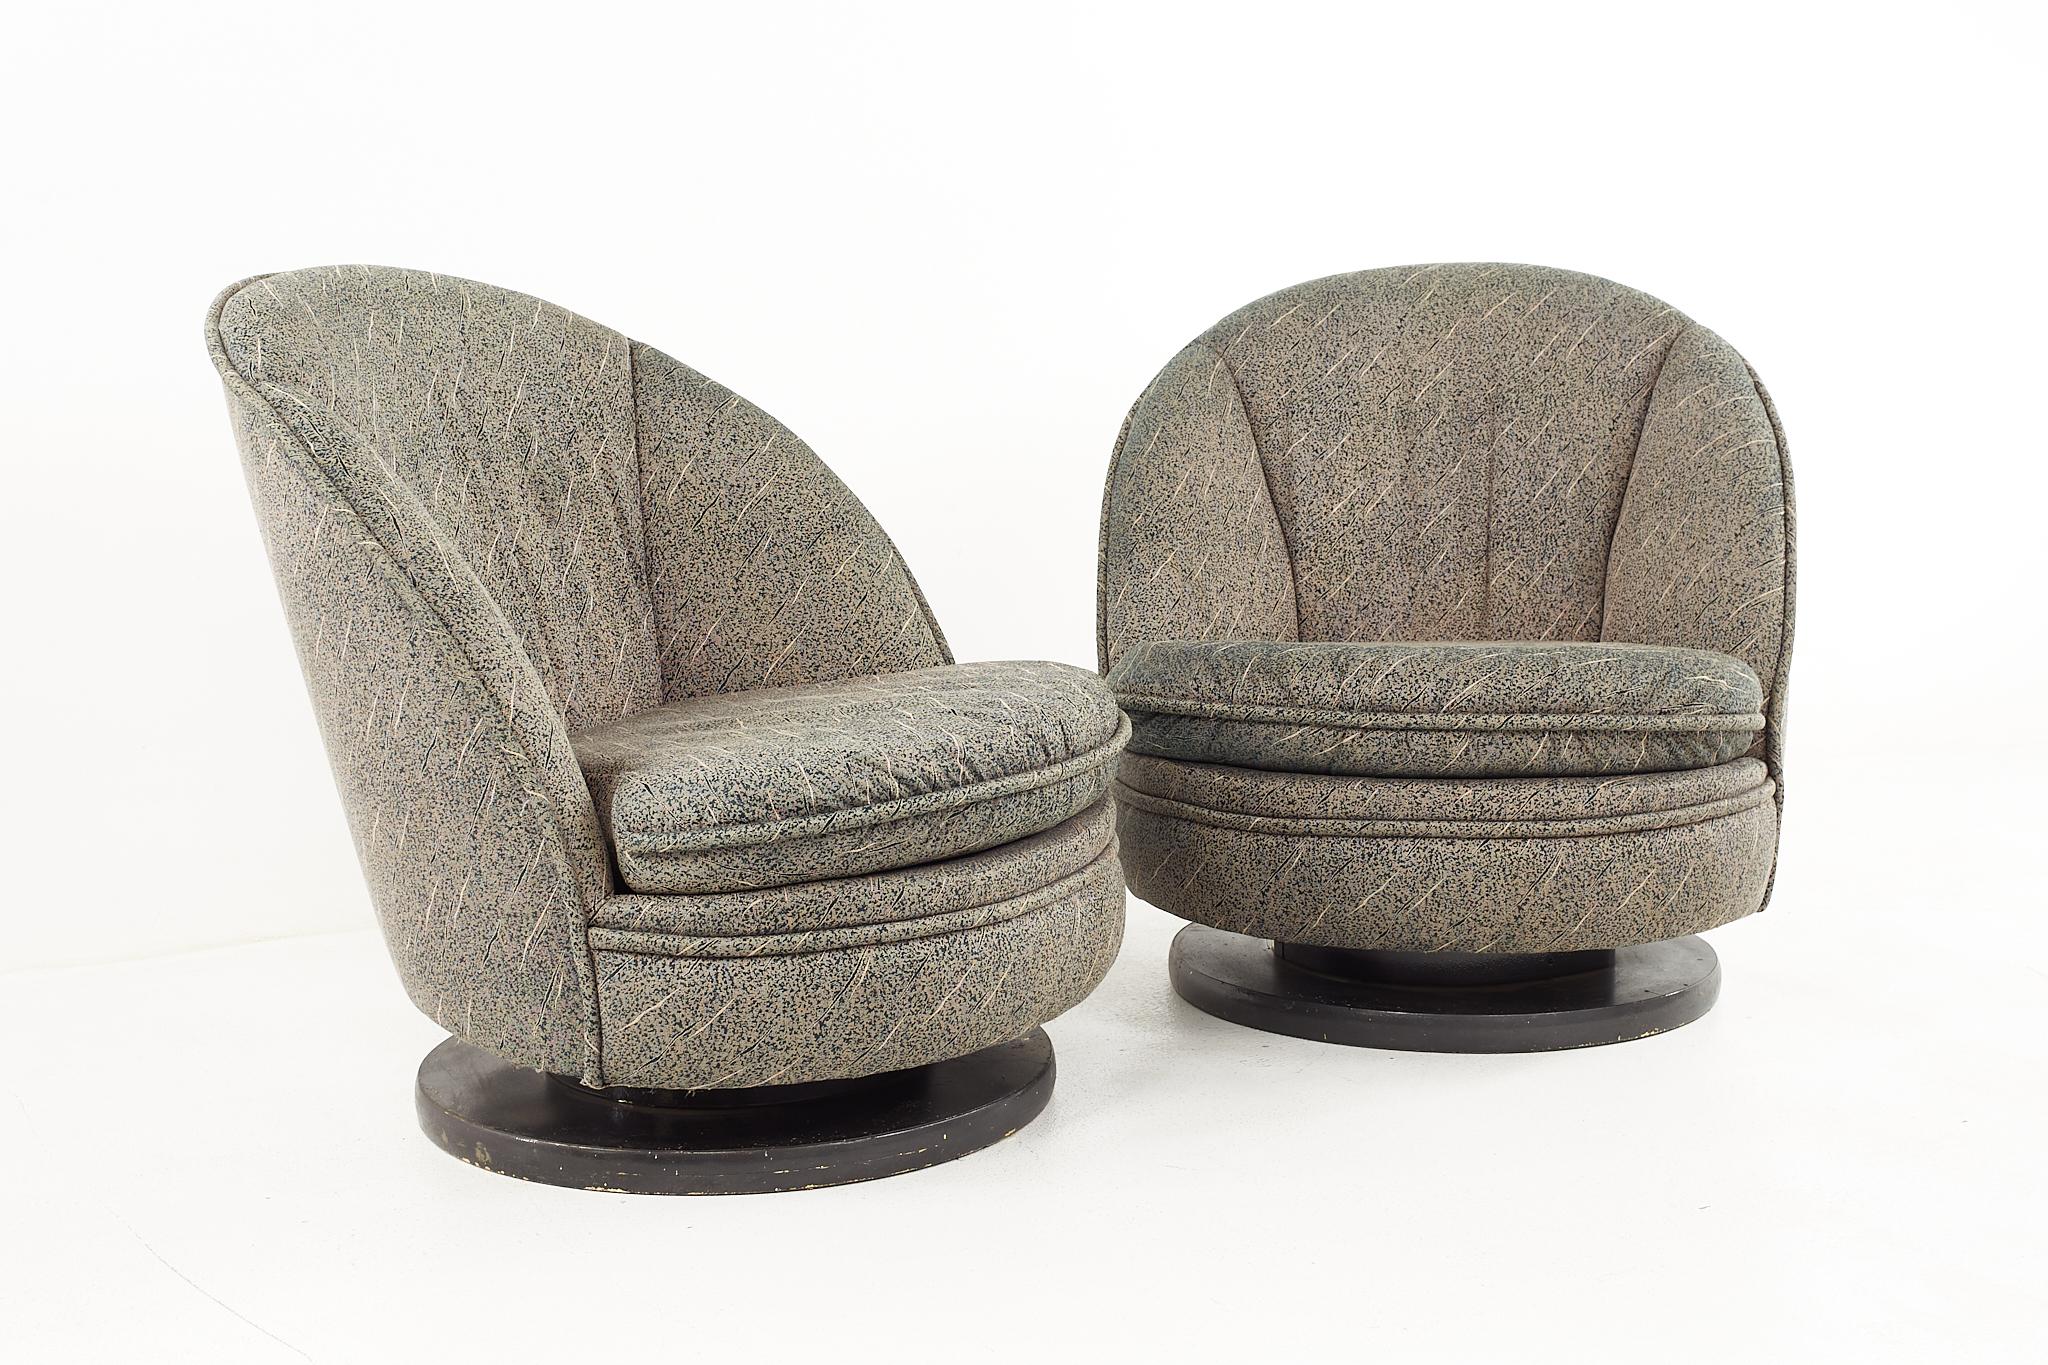 Milo Baughman Mid Century Swivel Rocking Lounge Stühle - Ein Paar

Jeder Stuhl misst: 32 breit x 23 tief x 32 hoch, mit einer Sitzhöhe von 12 Zoll 

Alle Möbelstücke sind in einem so genannten restaurierten Vintage-Zustand zu haben. Das